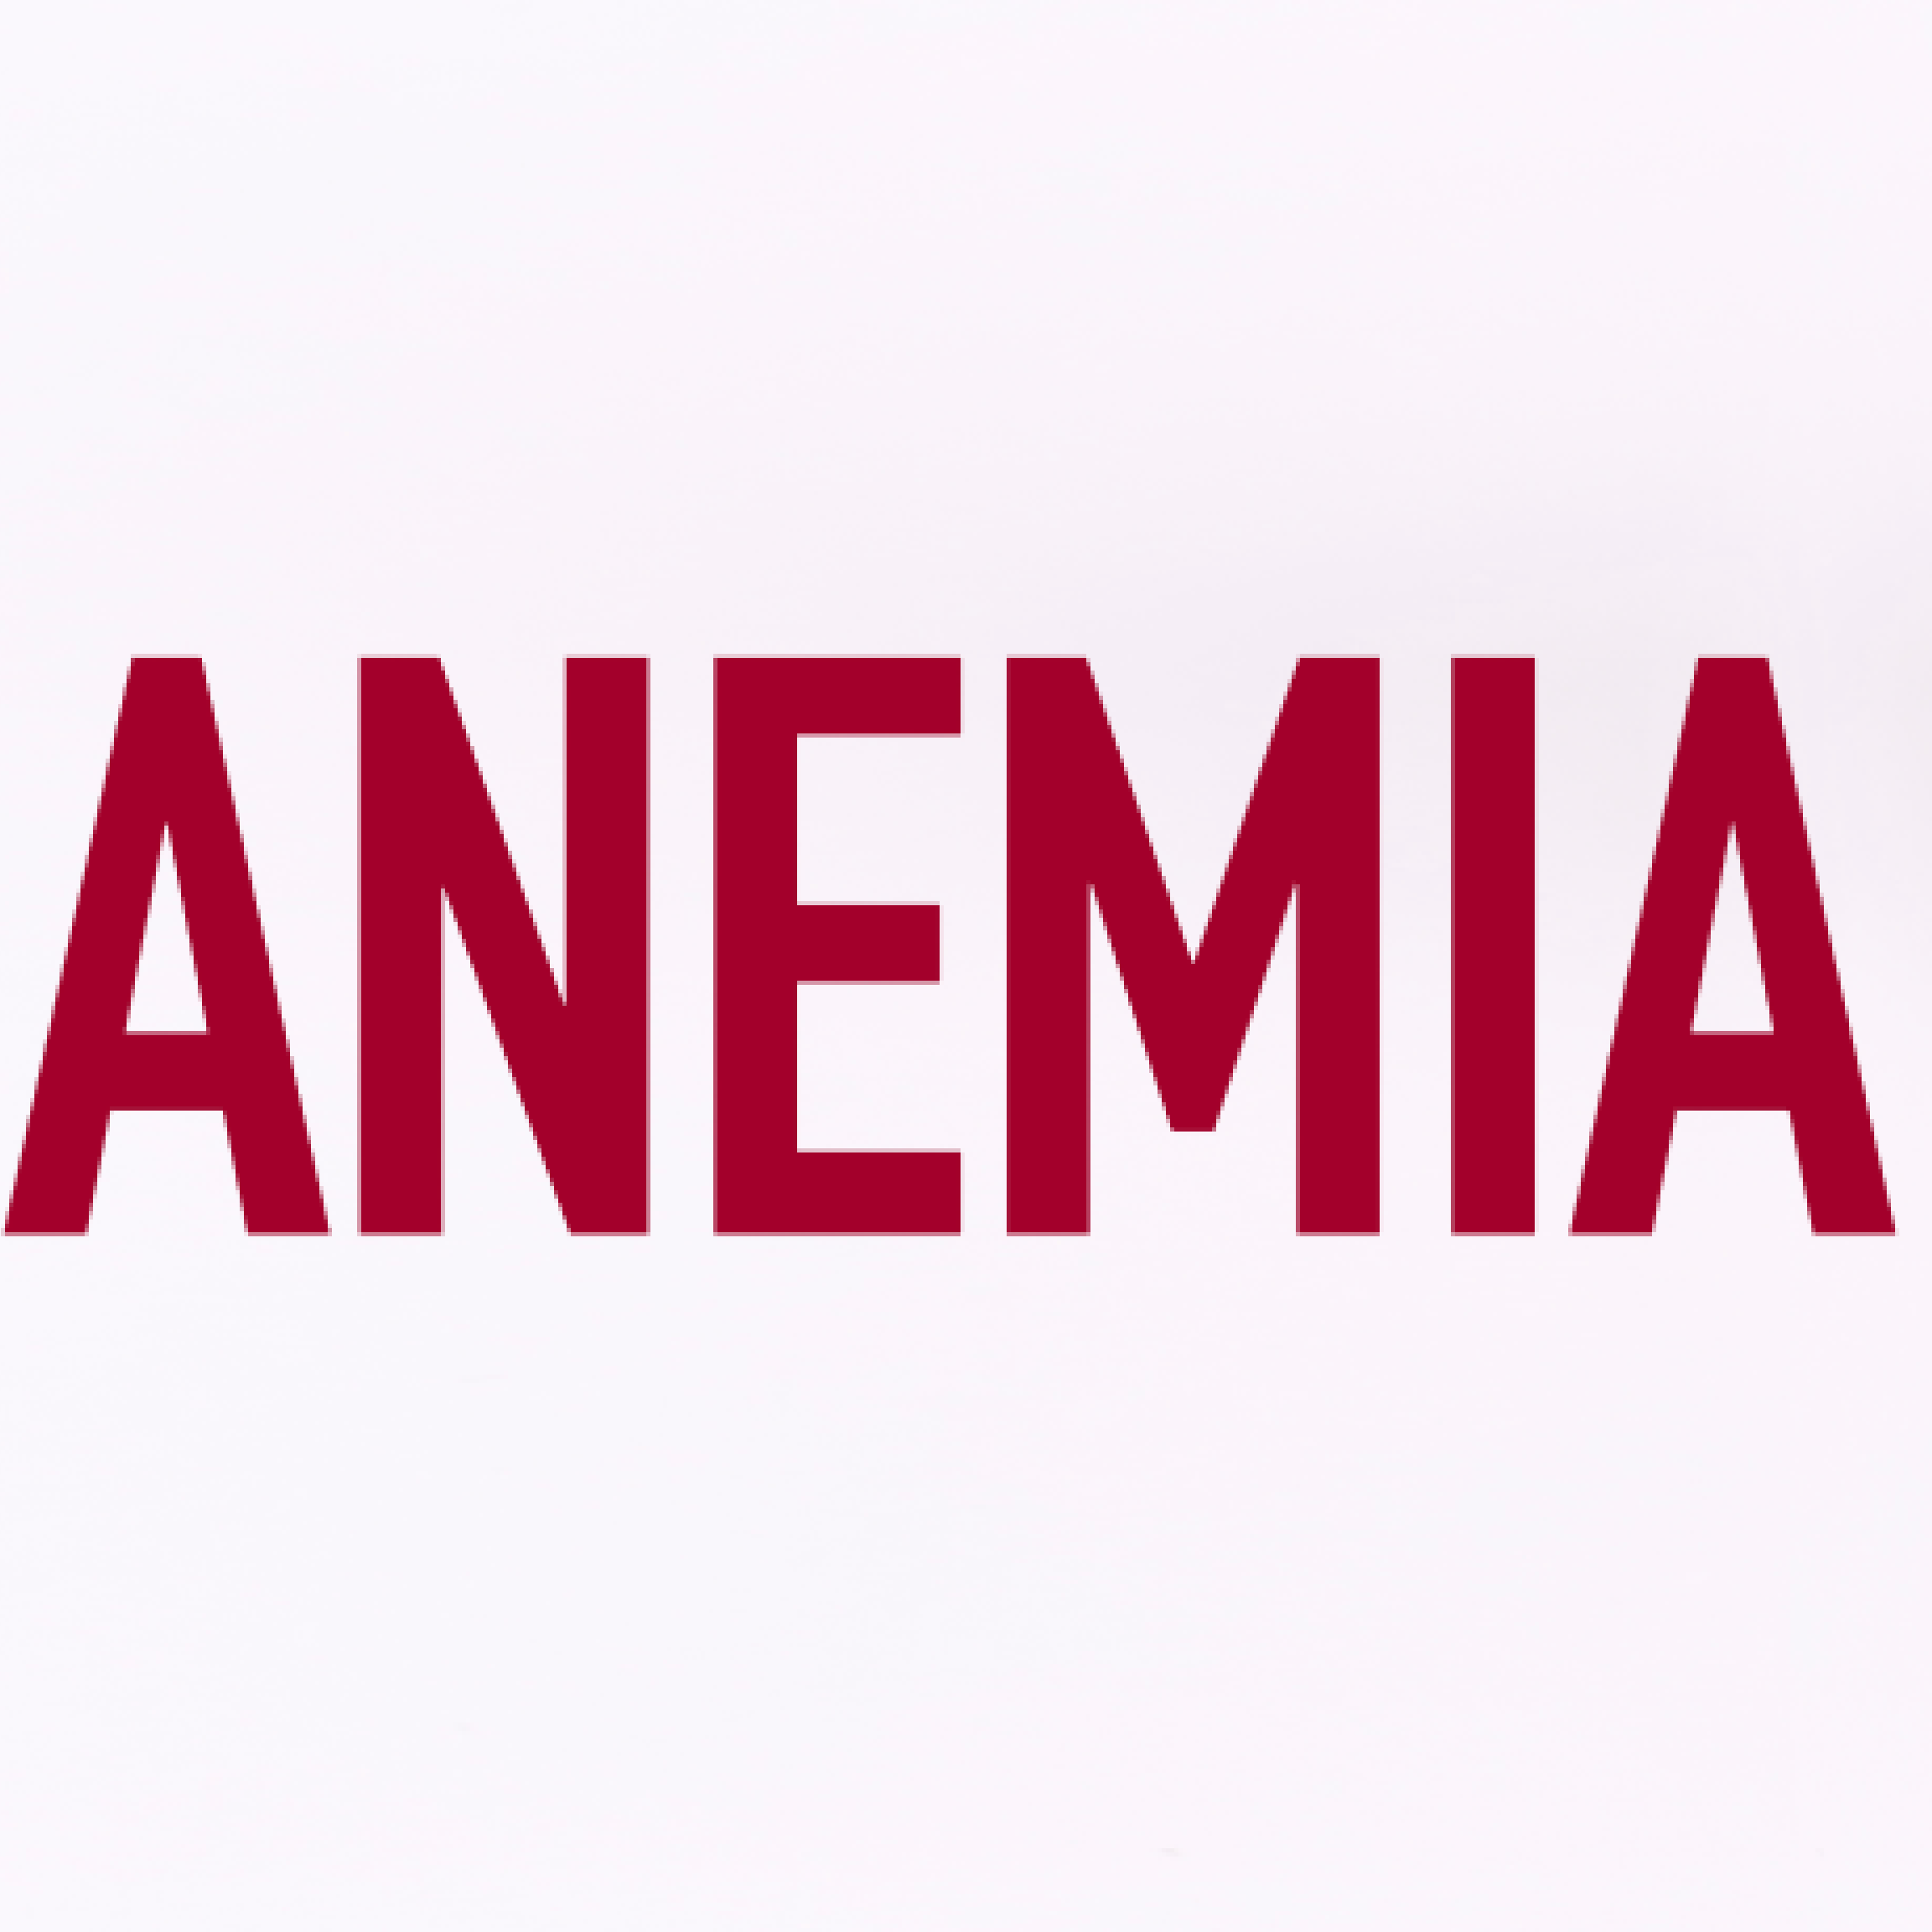 Przyczyny, objawy i leczenie anemii